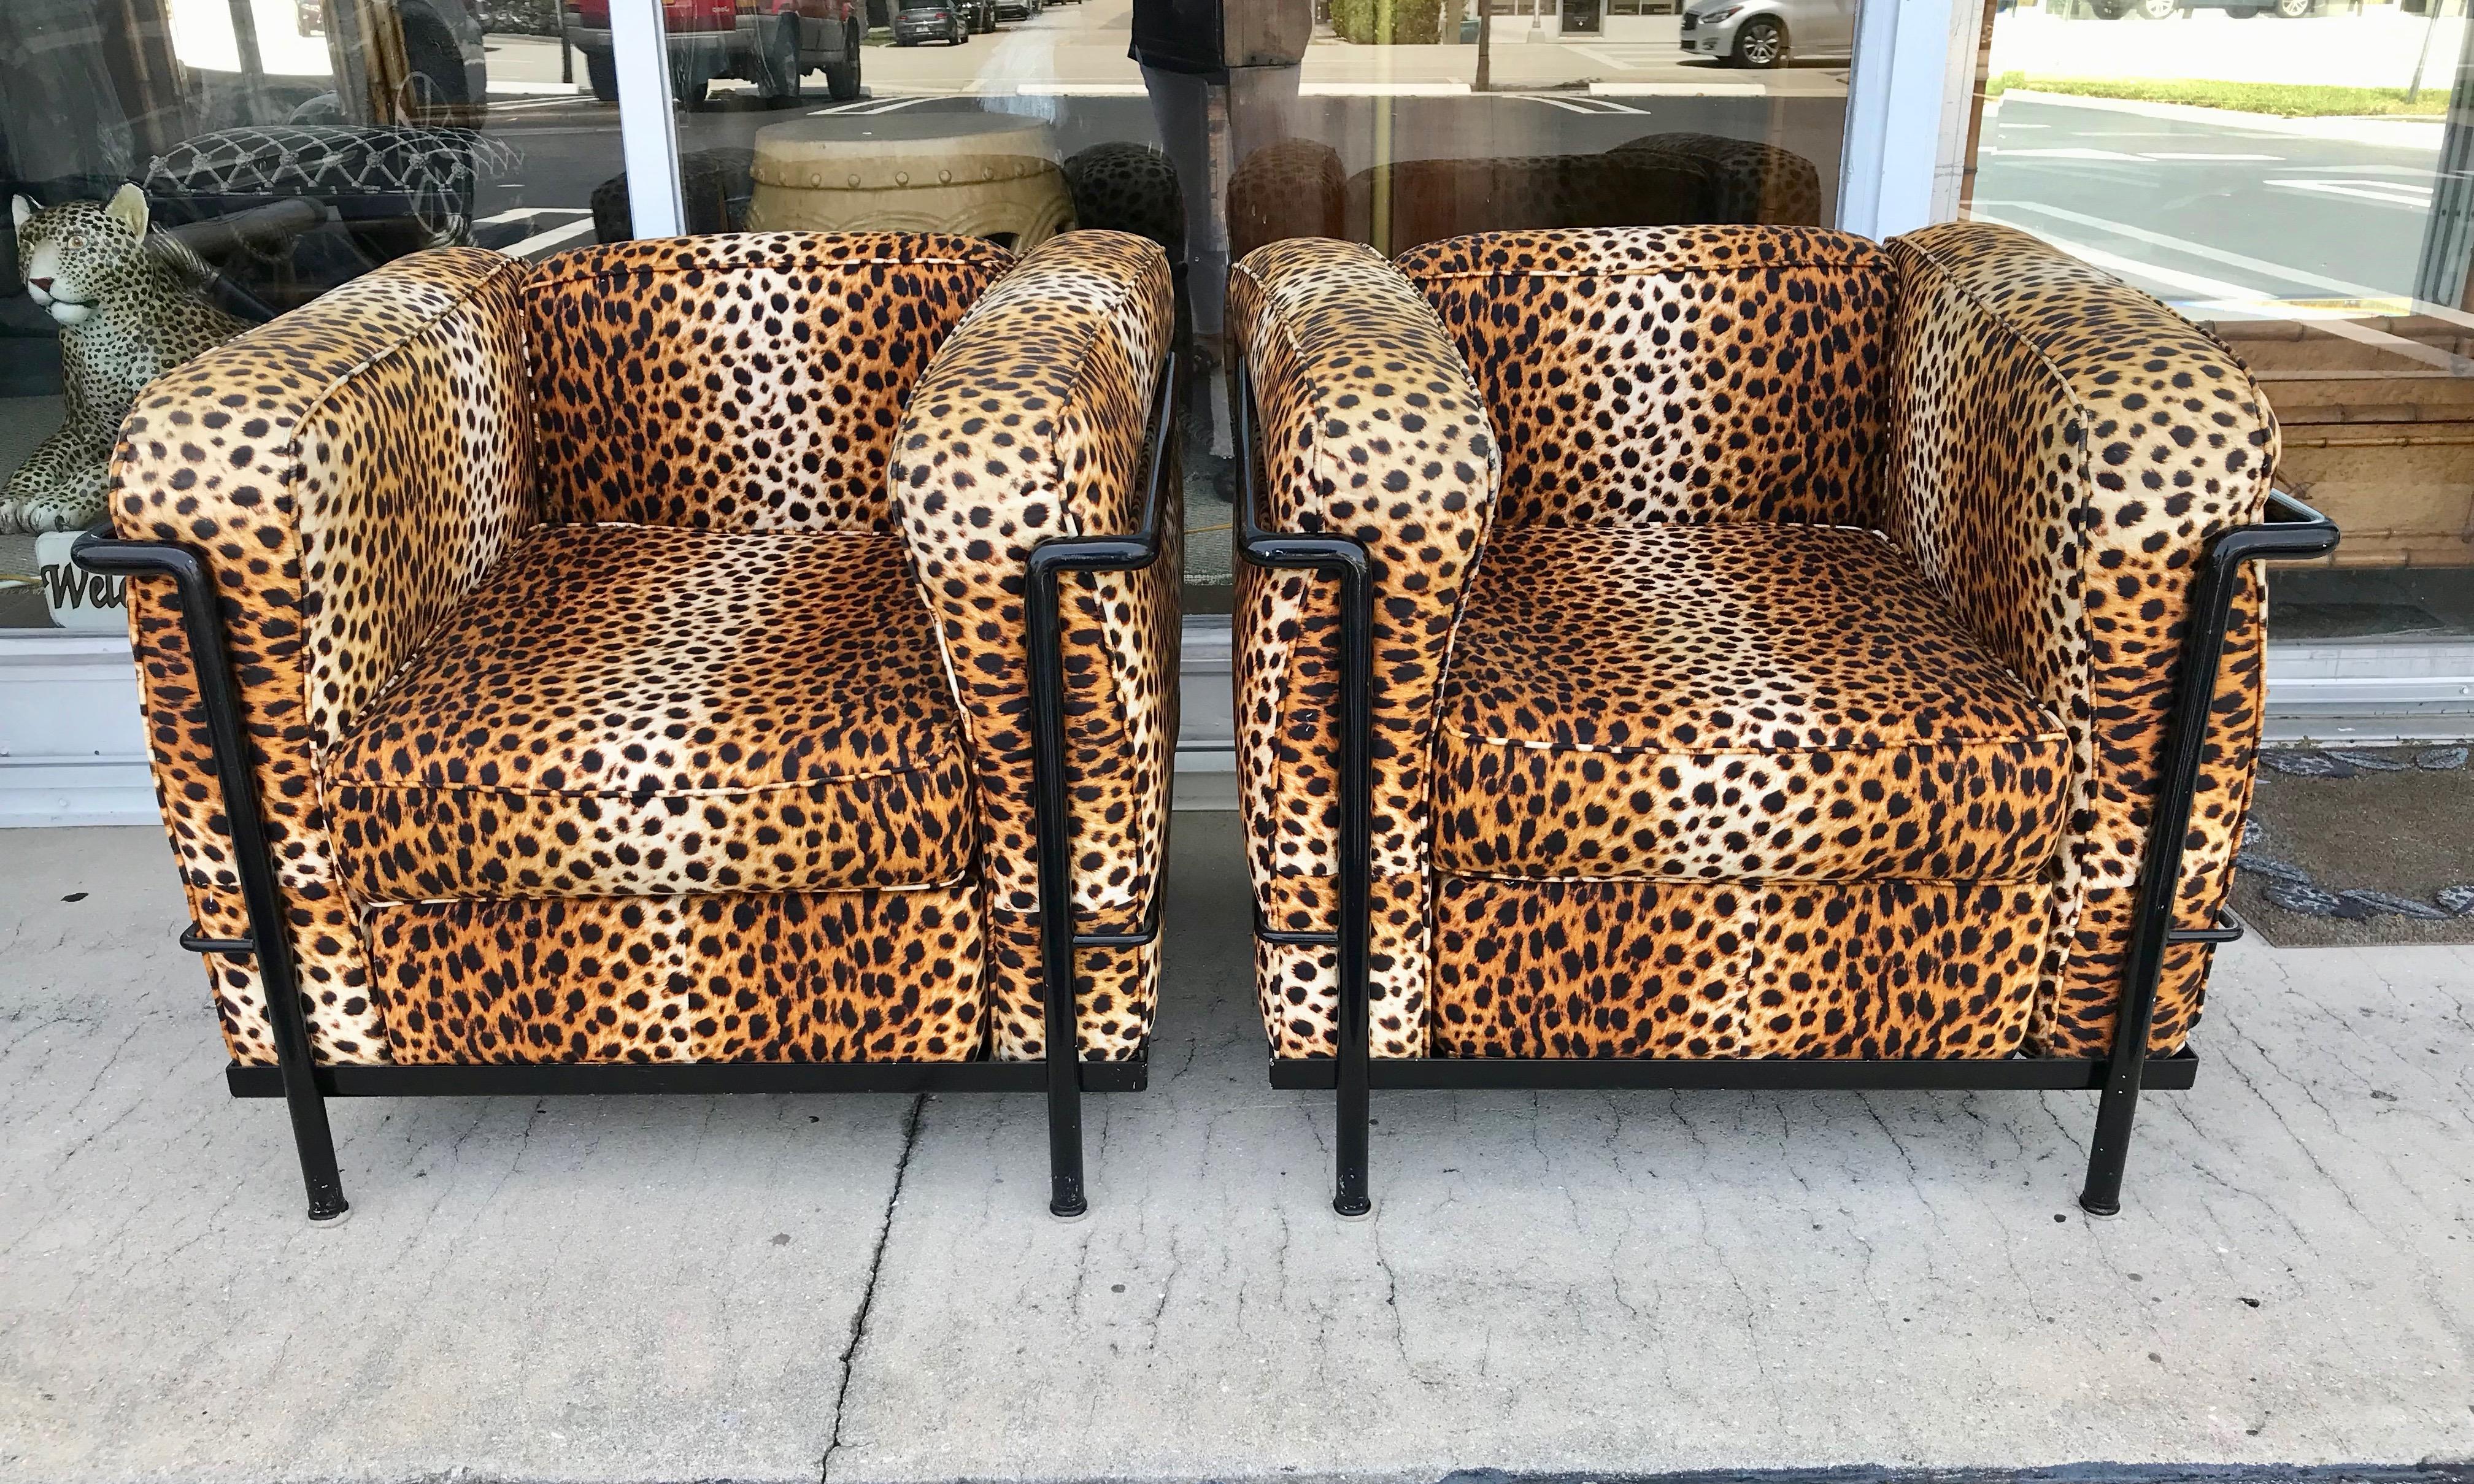 Chaises spectaculaires rembourrées en faux léopard dans un cadre métallique.
Visuellement attrayant et conçu pour le confort.